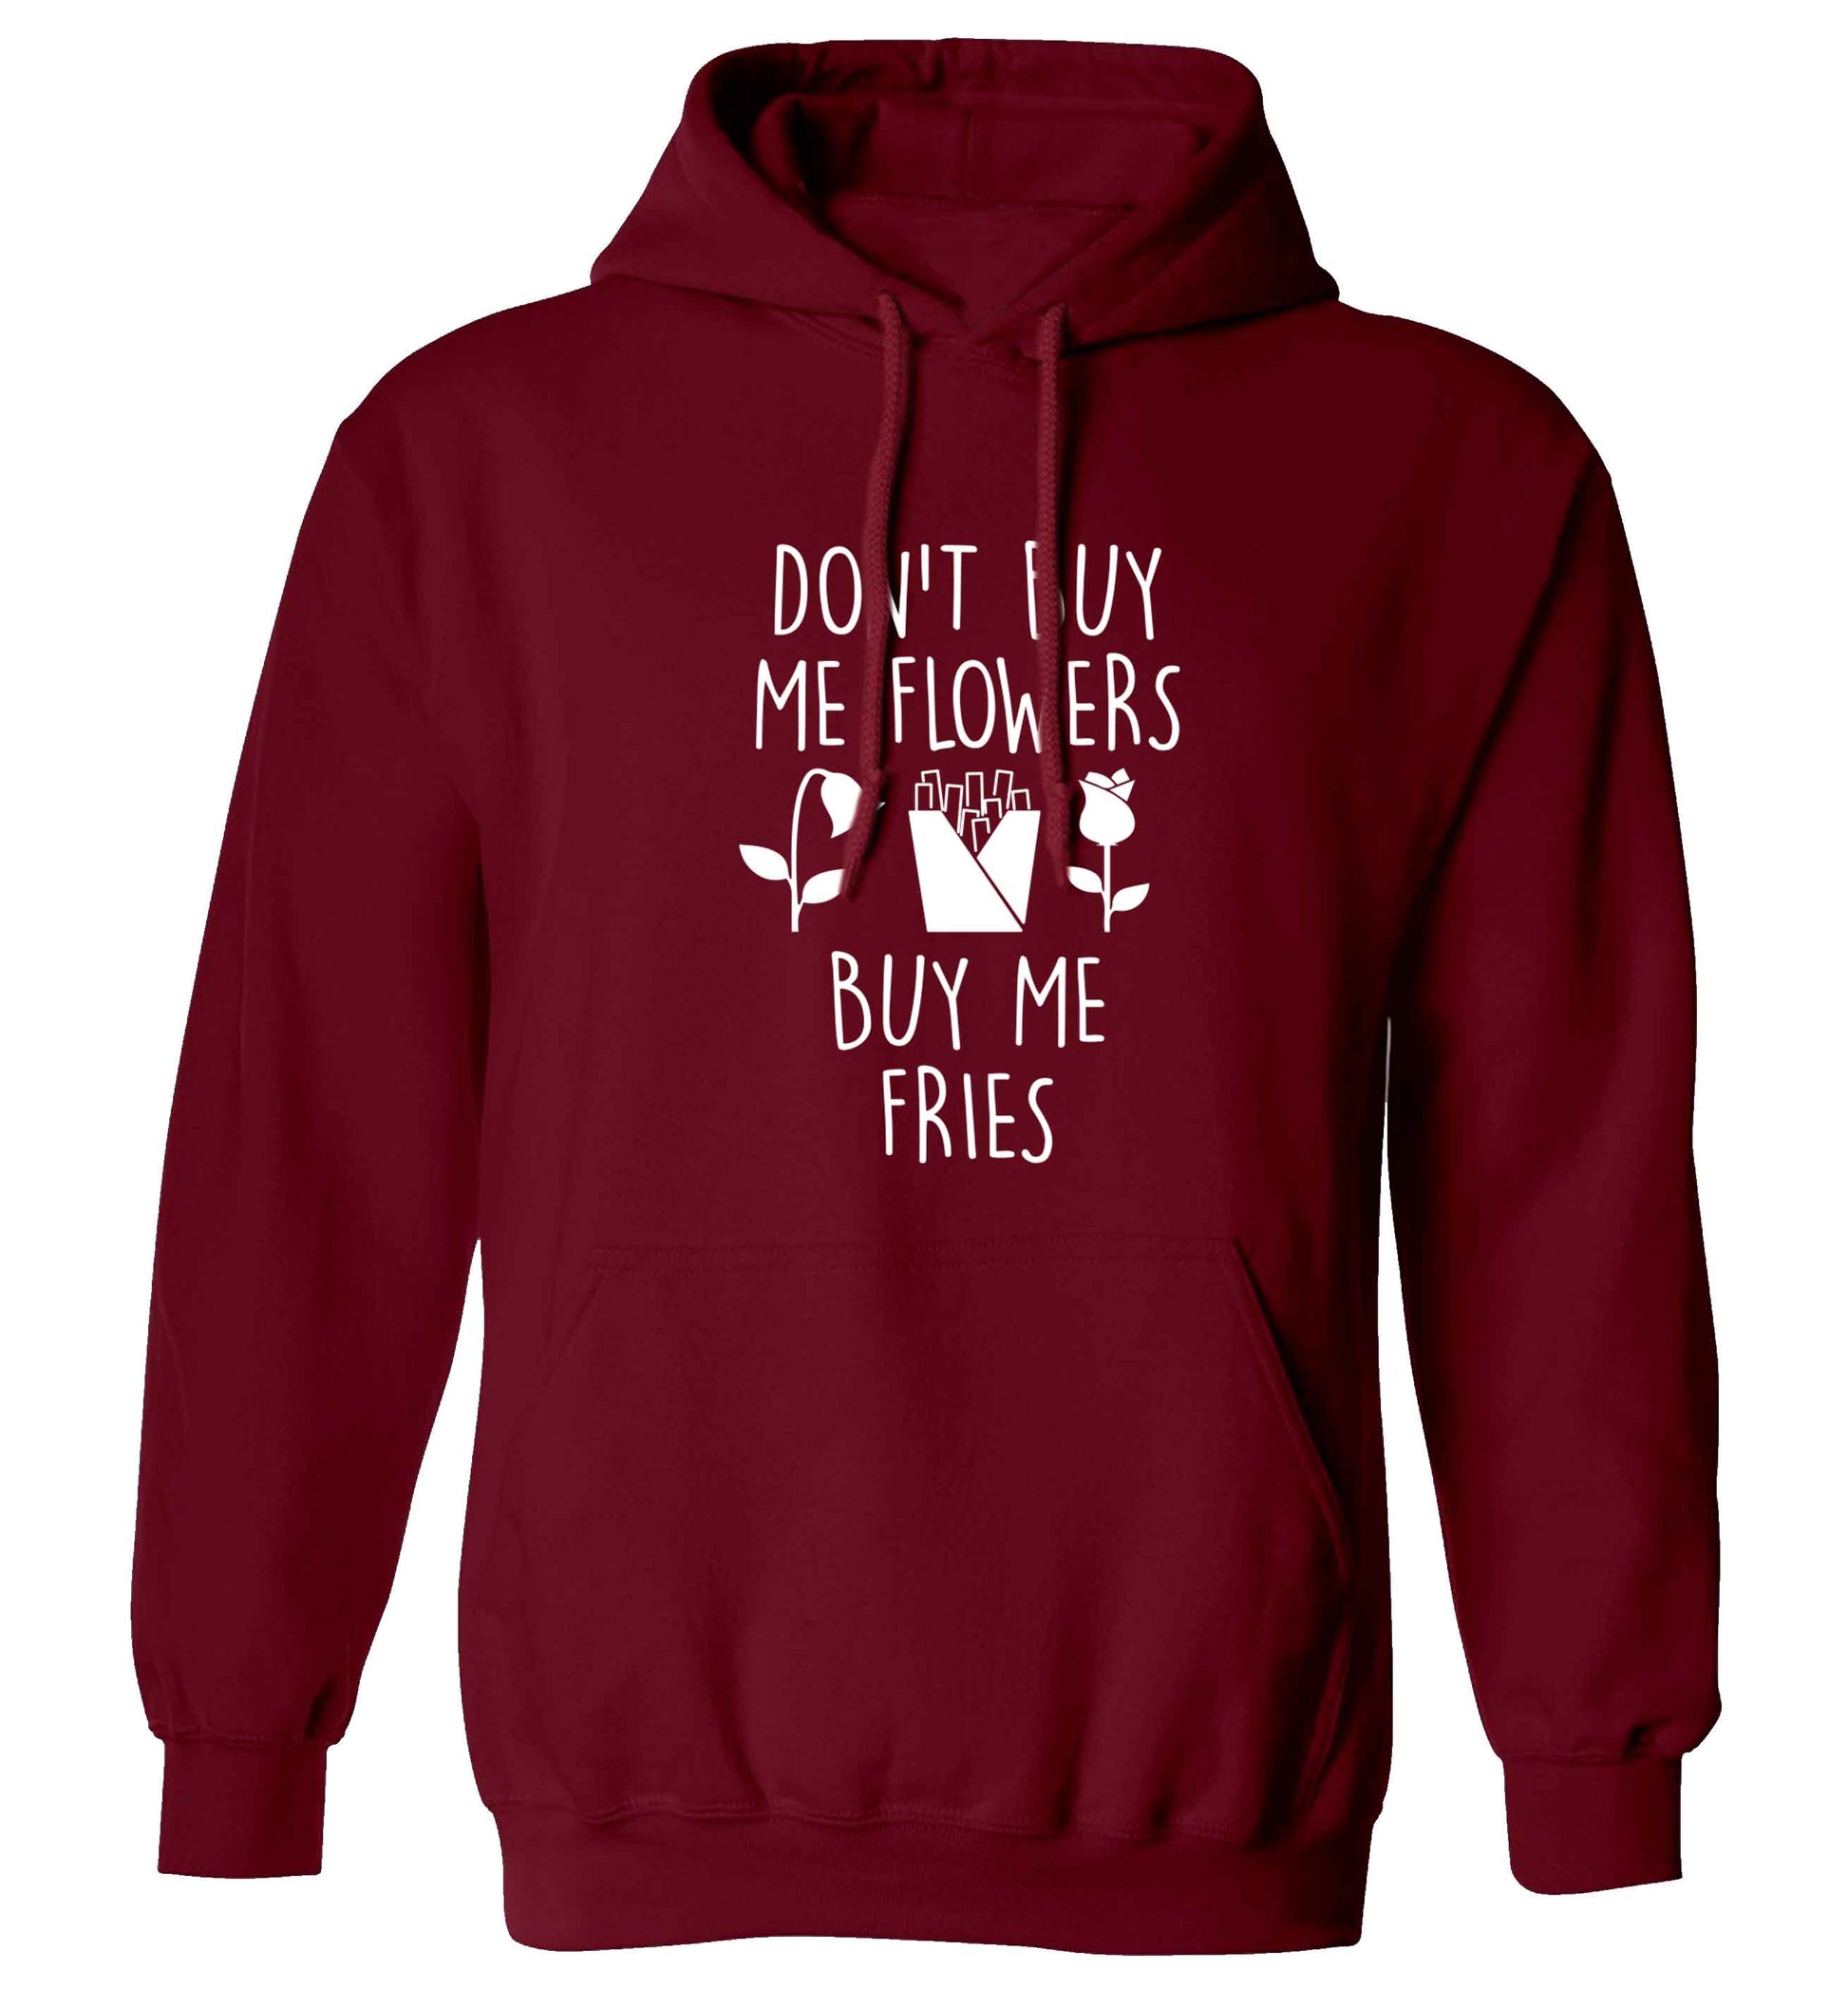 Don't buy me flowers buy me fries adults unisex maroon hoodie 2XL